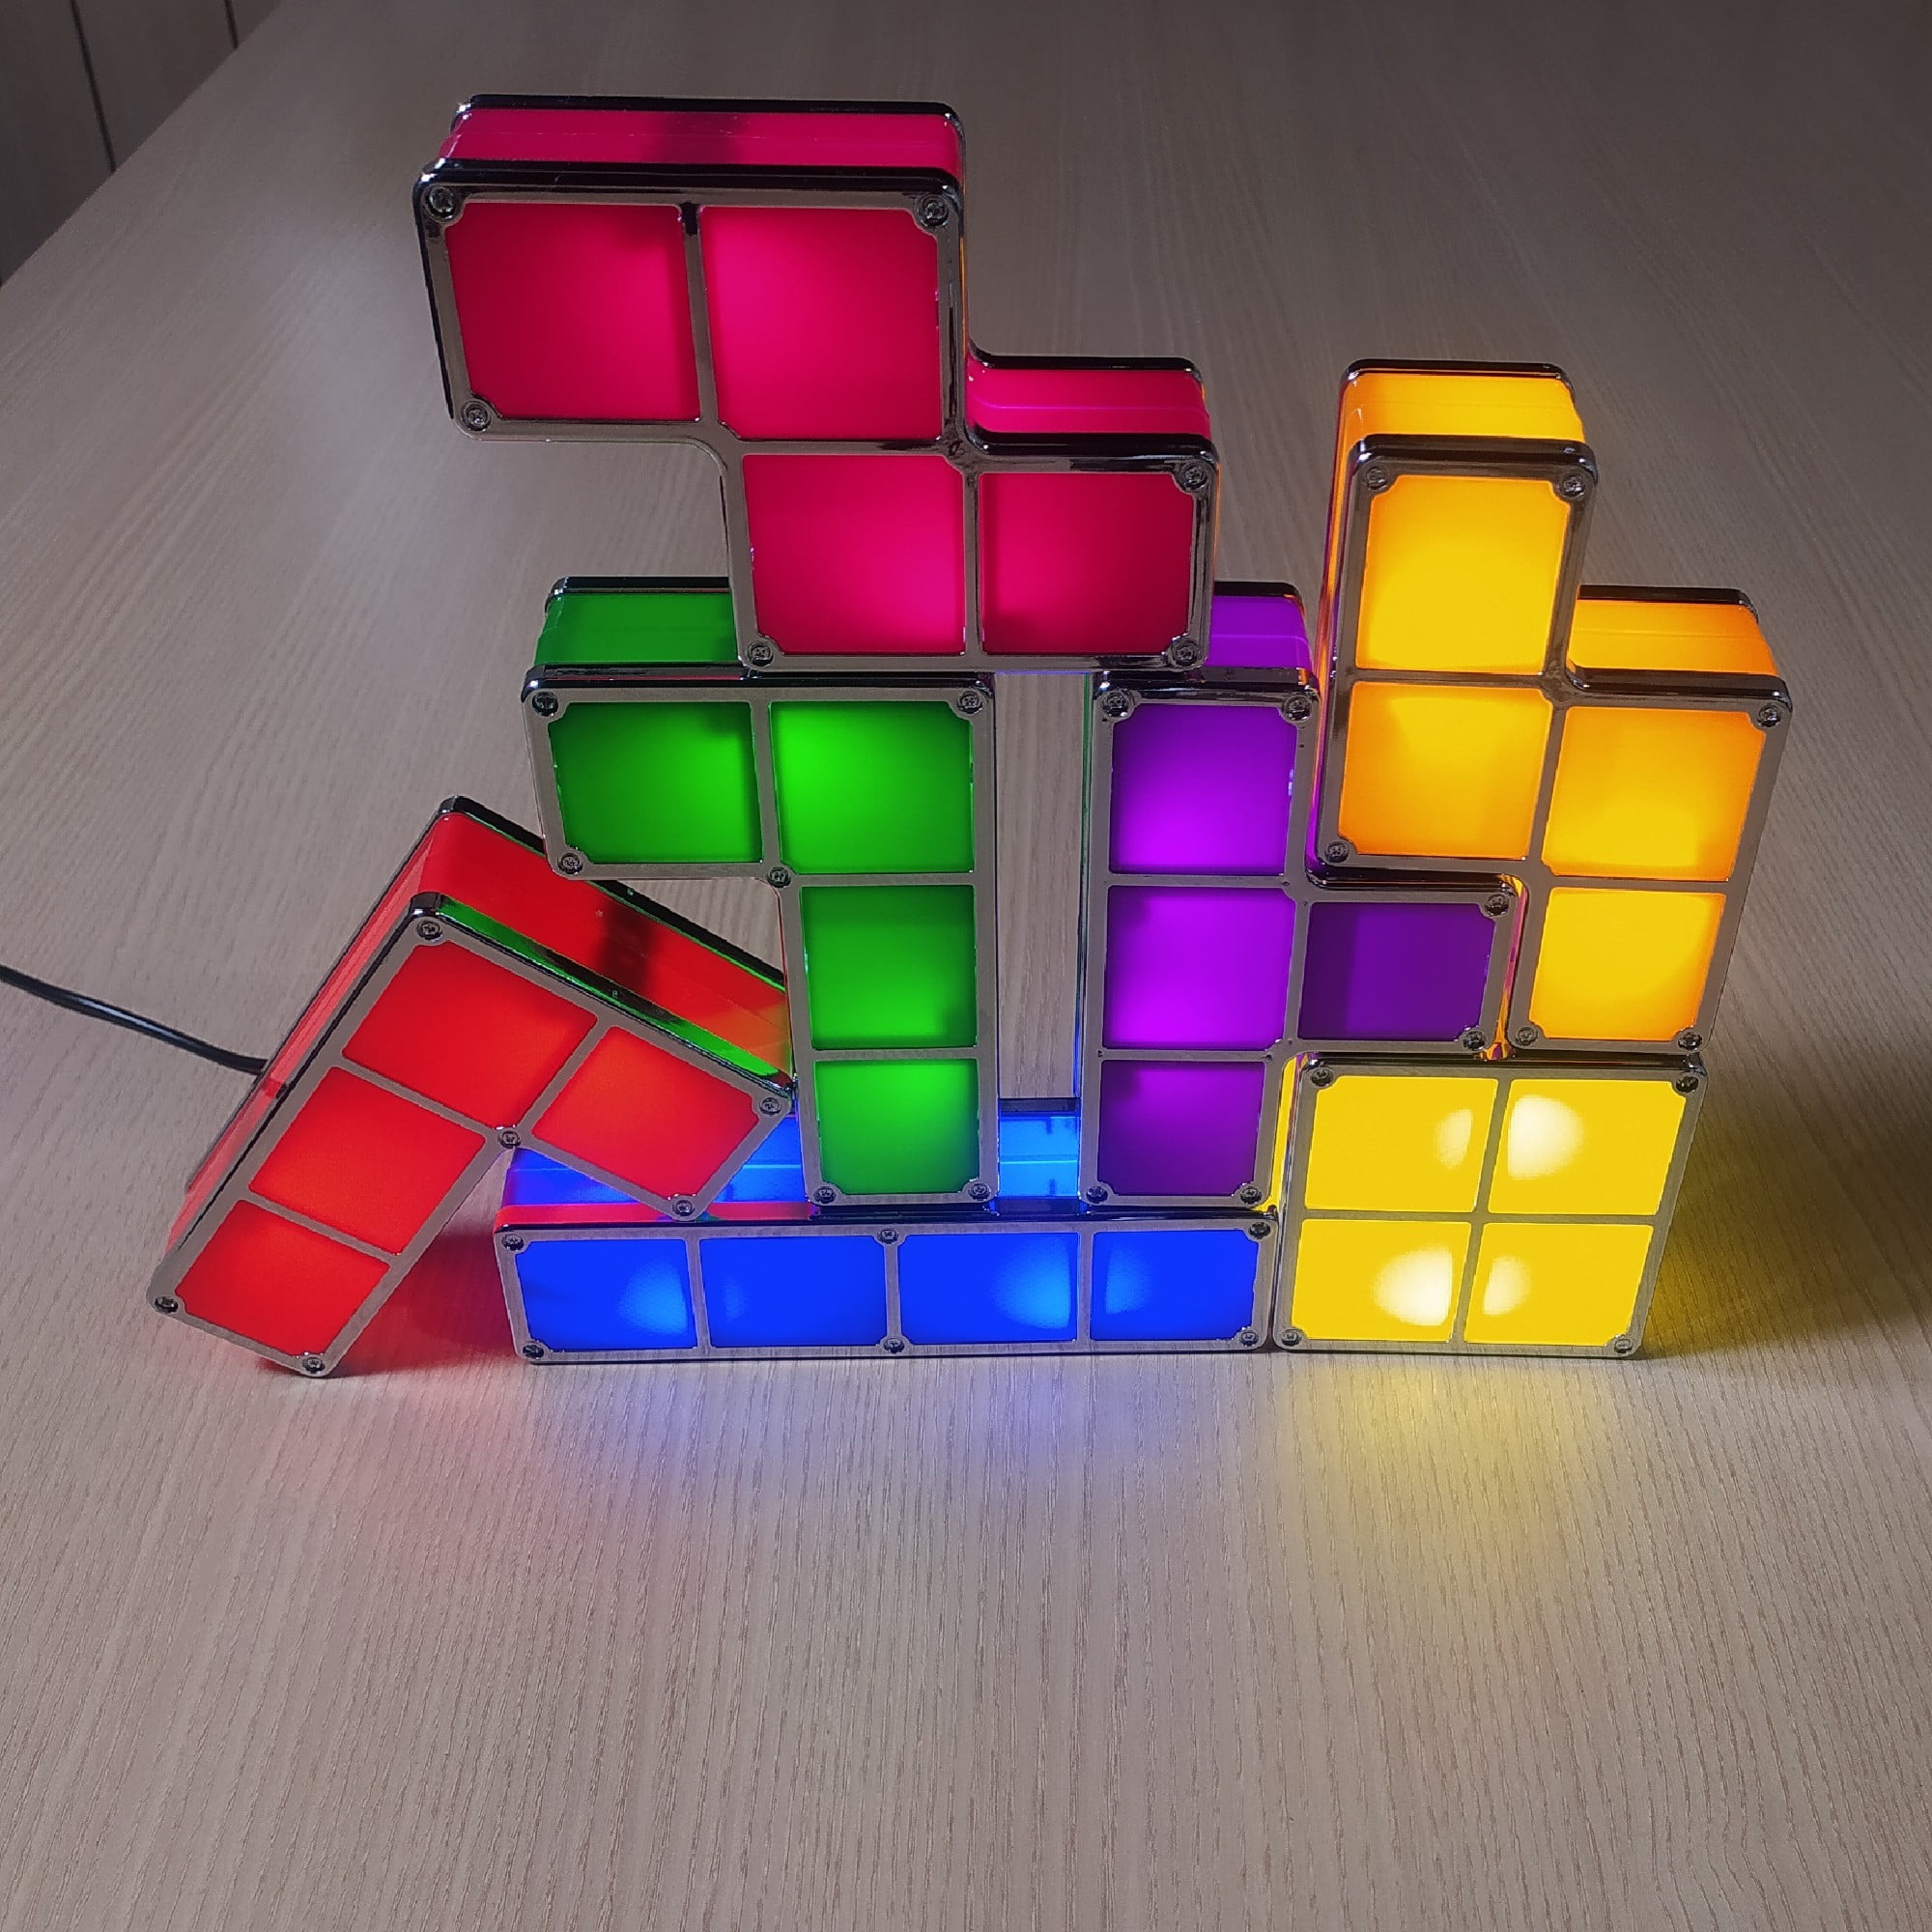 Luminária Tetris